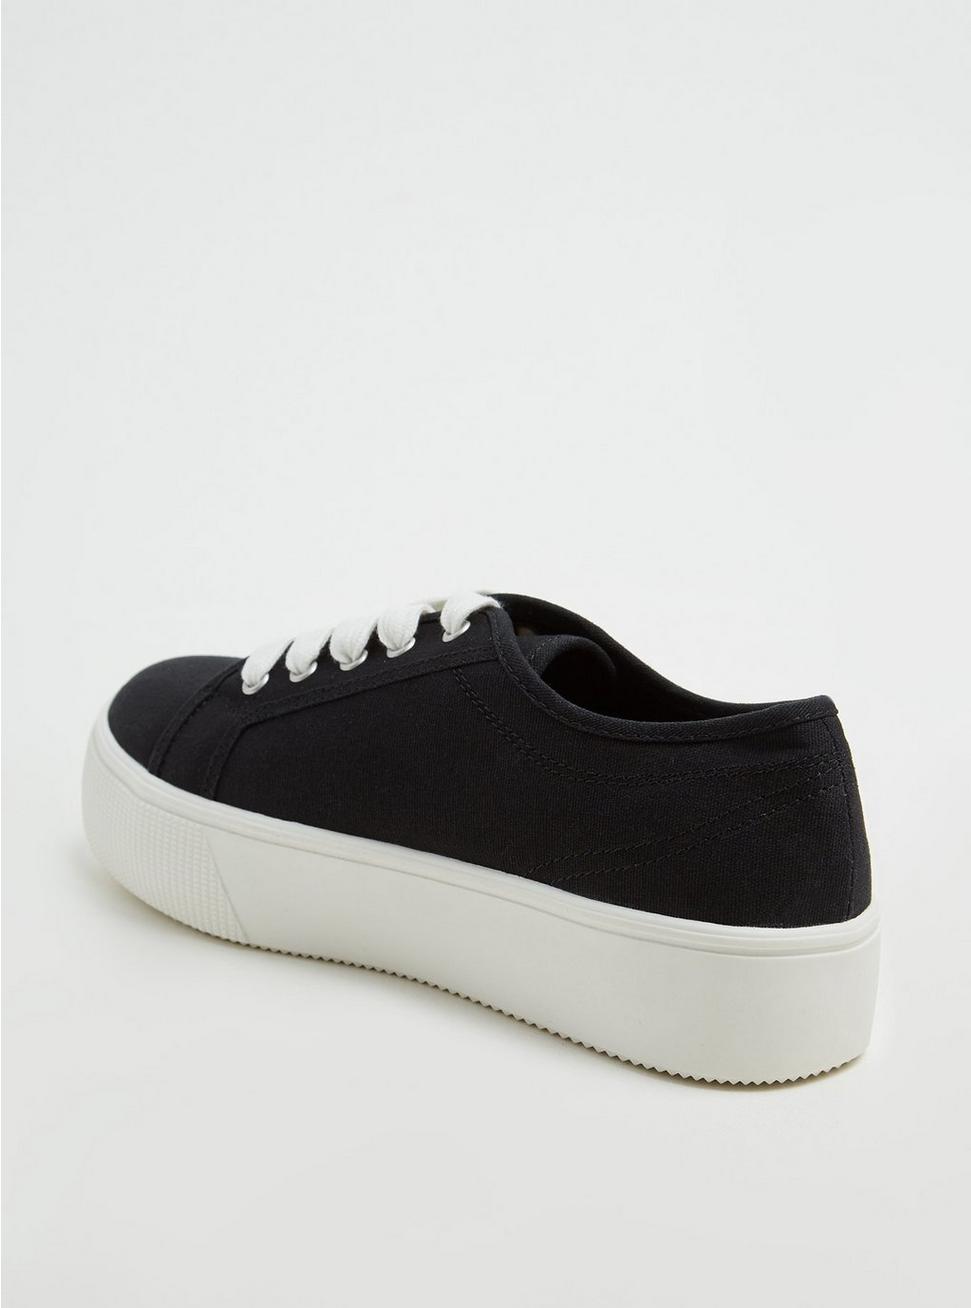 Plus Size - Black Canvas Lace-Up Platform Sneaker (WW) - Torrid